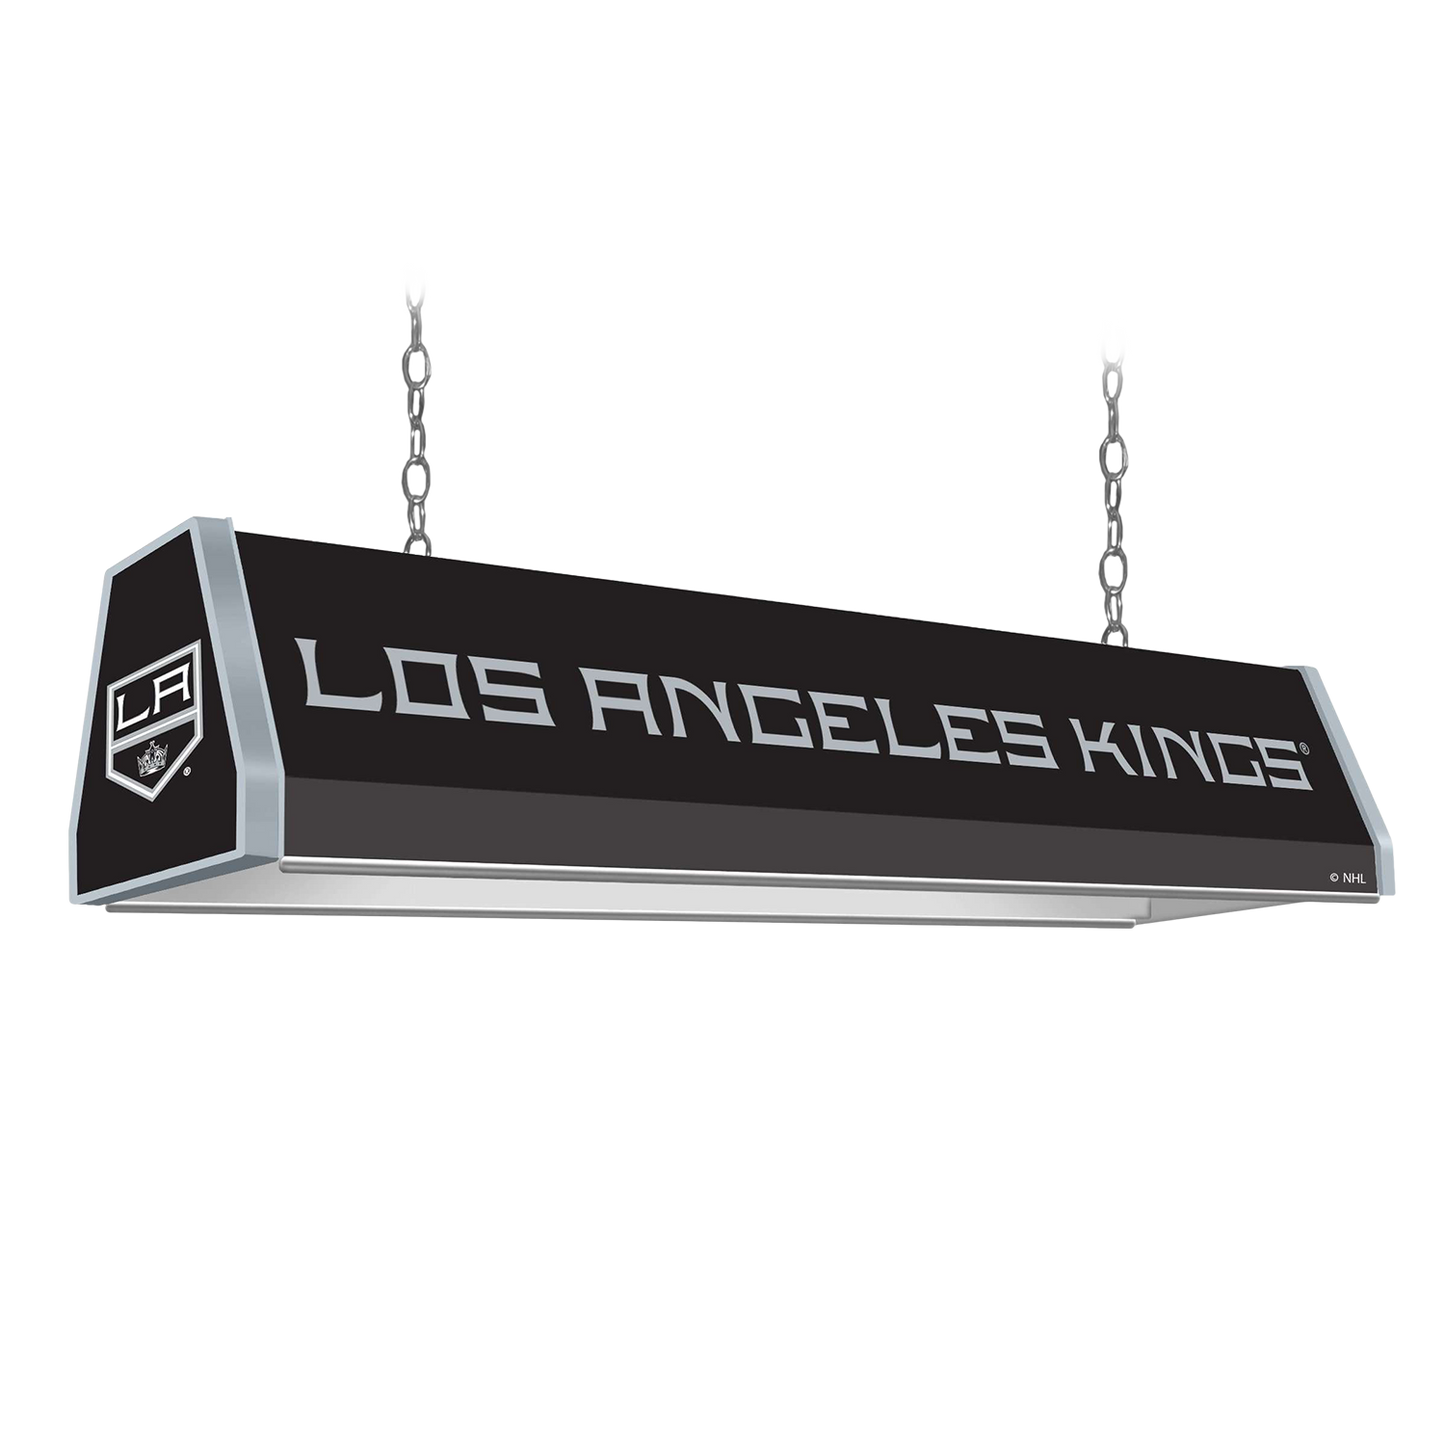 Los Angeles Kings Standard Pool Table Light